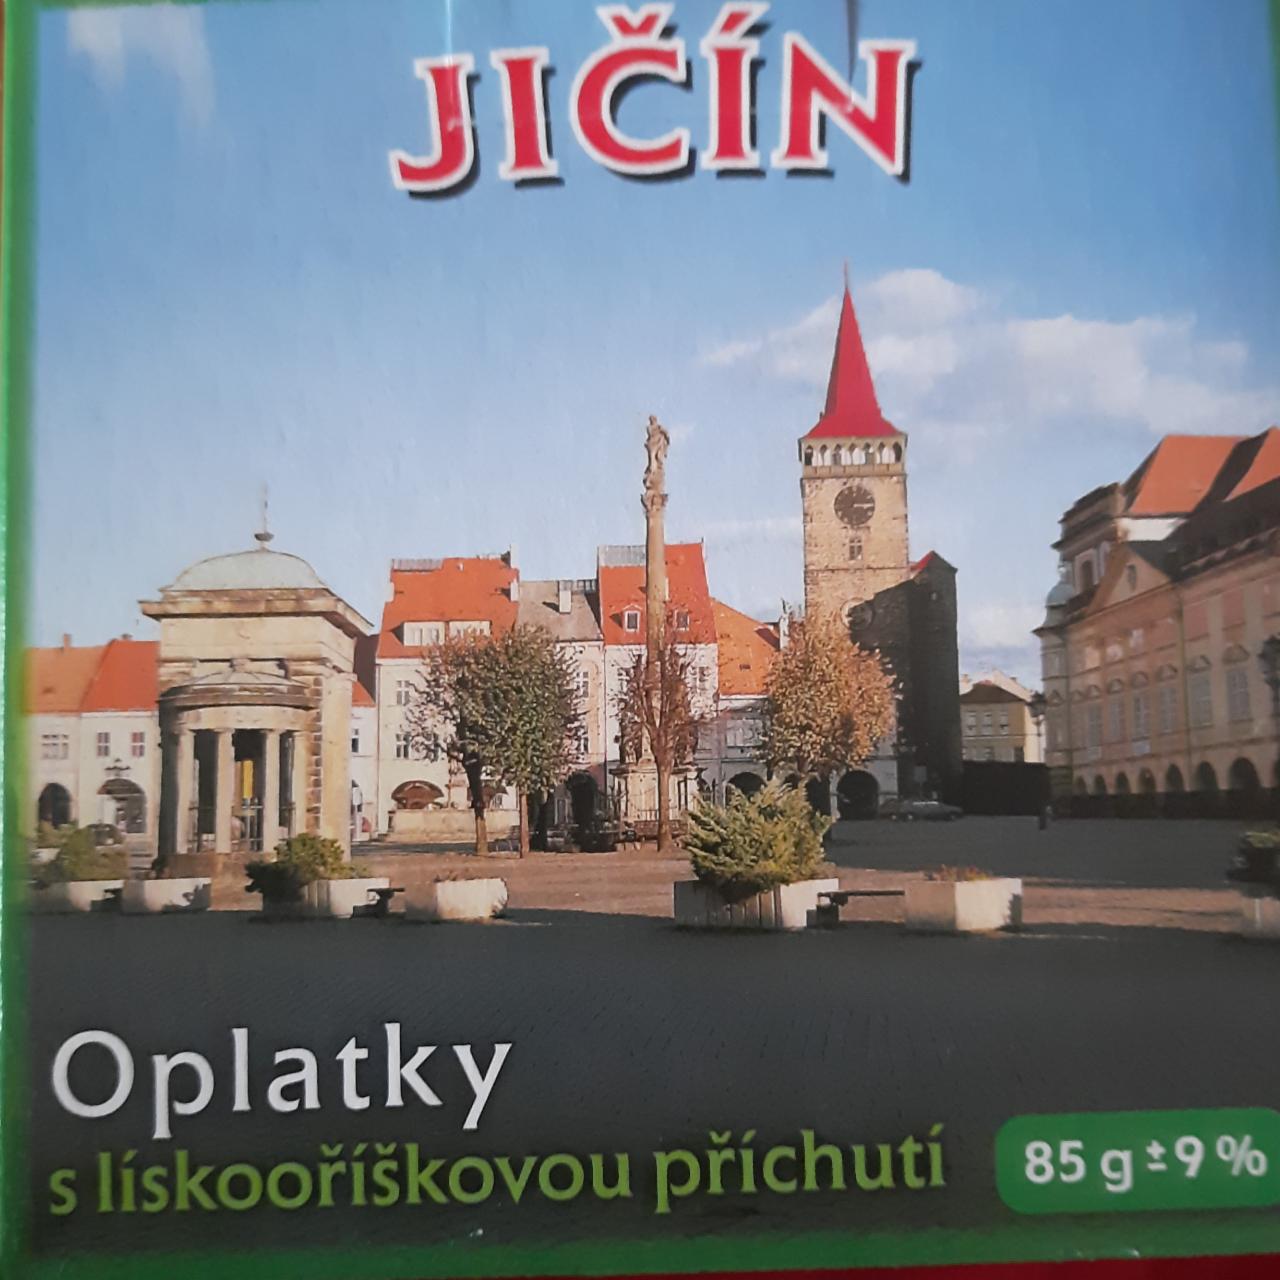 Fotografie - Oplatky s lískooříškovou příchutí Jičín